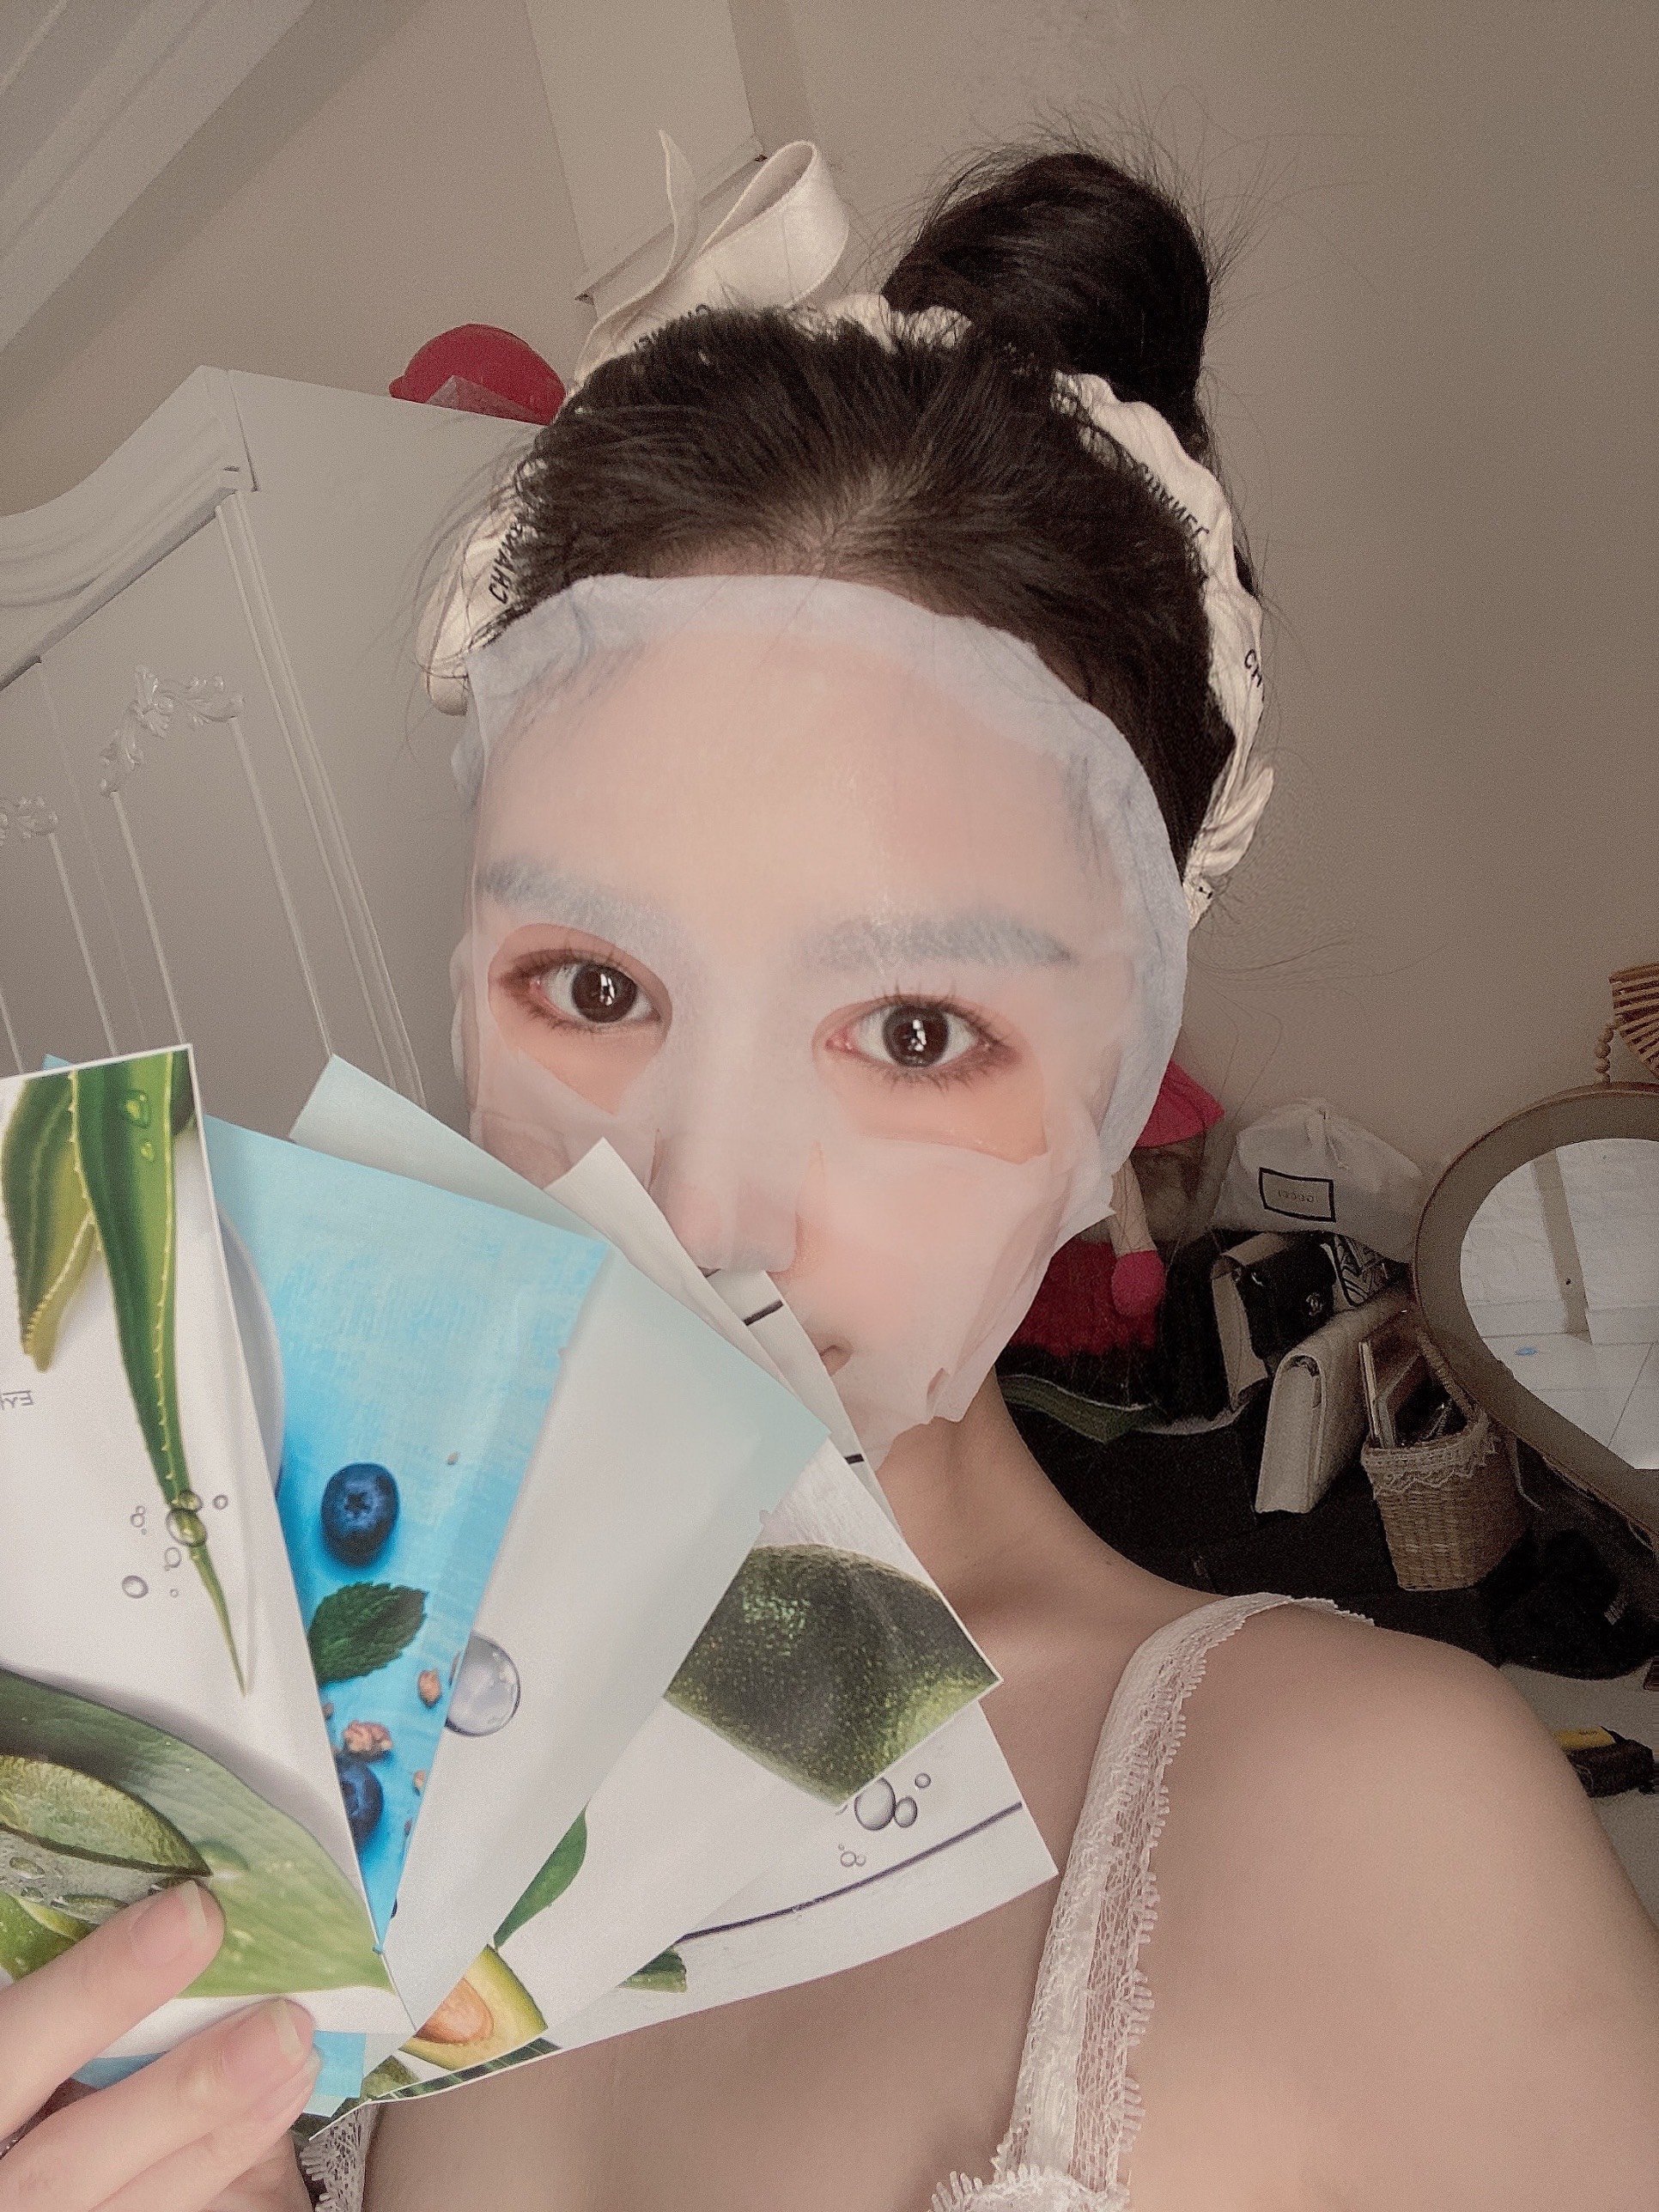 Mặt nạ tinh chất dừa Whisis Nature Origin Energy Sheet Mask cấp ẩm cho da căng mịn, sáng bóng